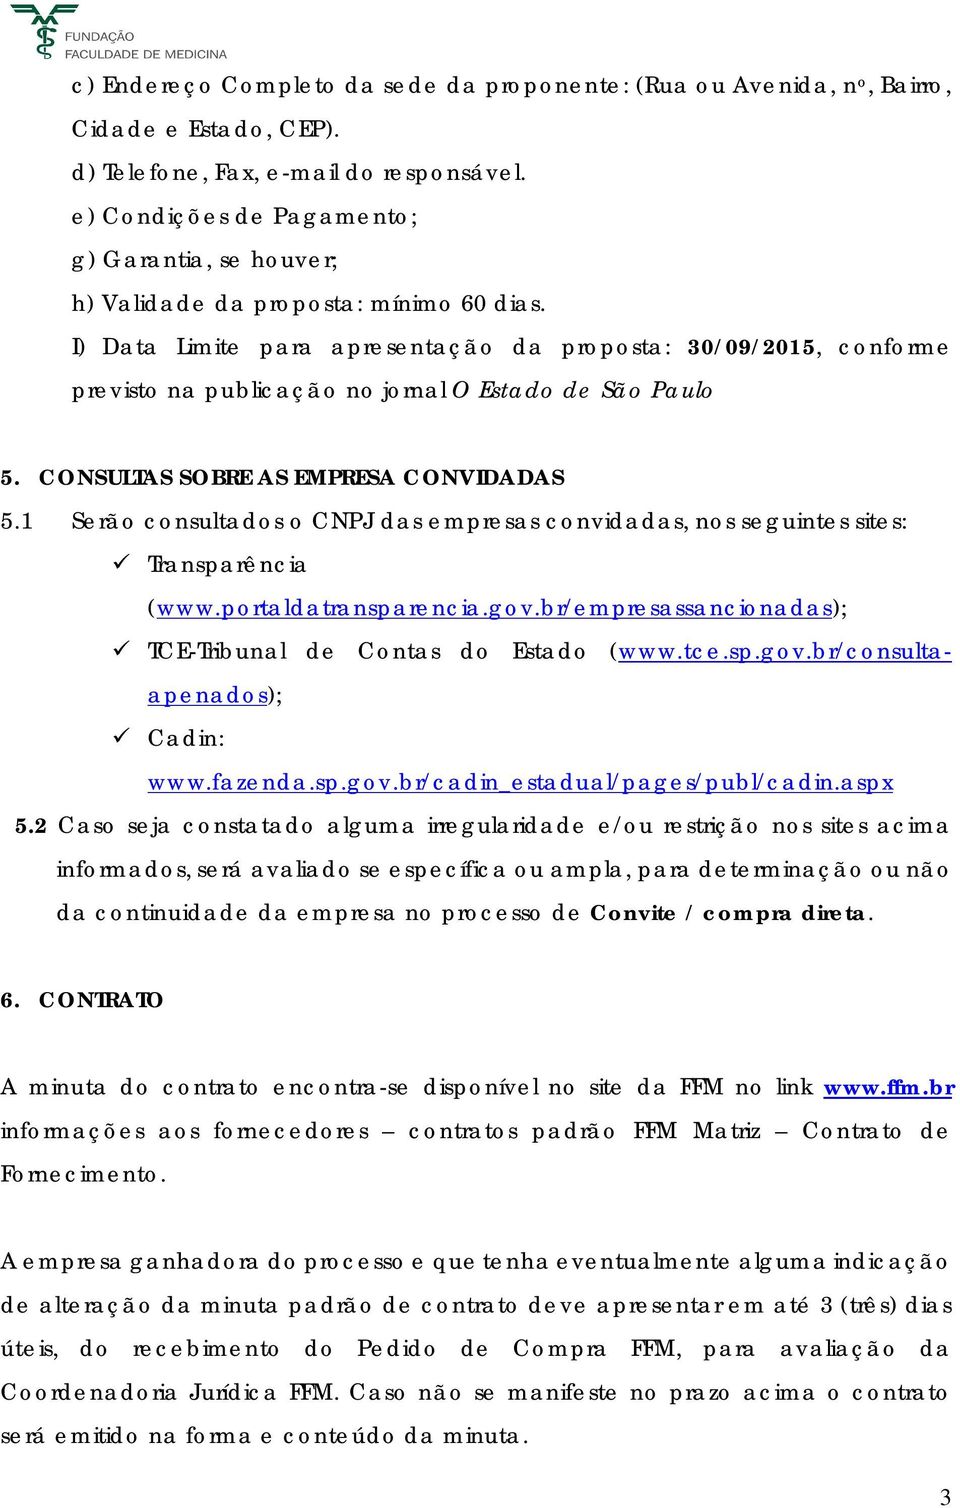 I) Data Limite para apresentação da proposta: 30/09/2015, conforme previsto na publicação no jornal O Estado de São Paulo 5. CONSULTAS SOBRE AS EMPRESA CONVIDADAS 5.